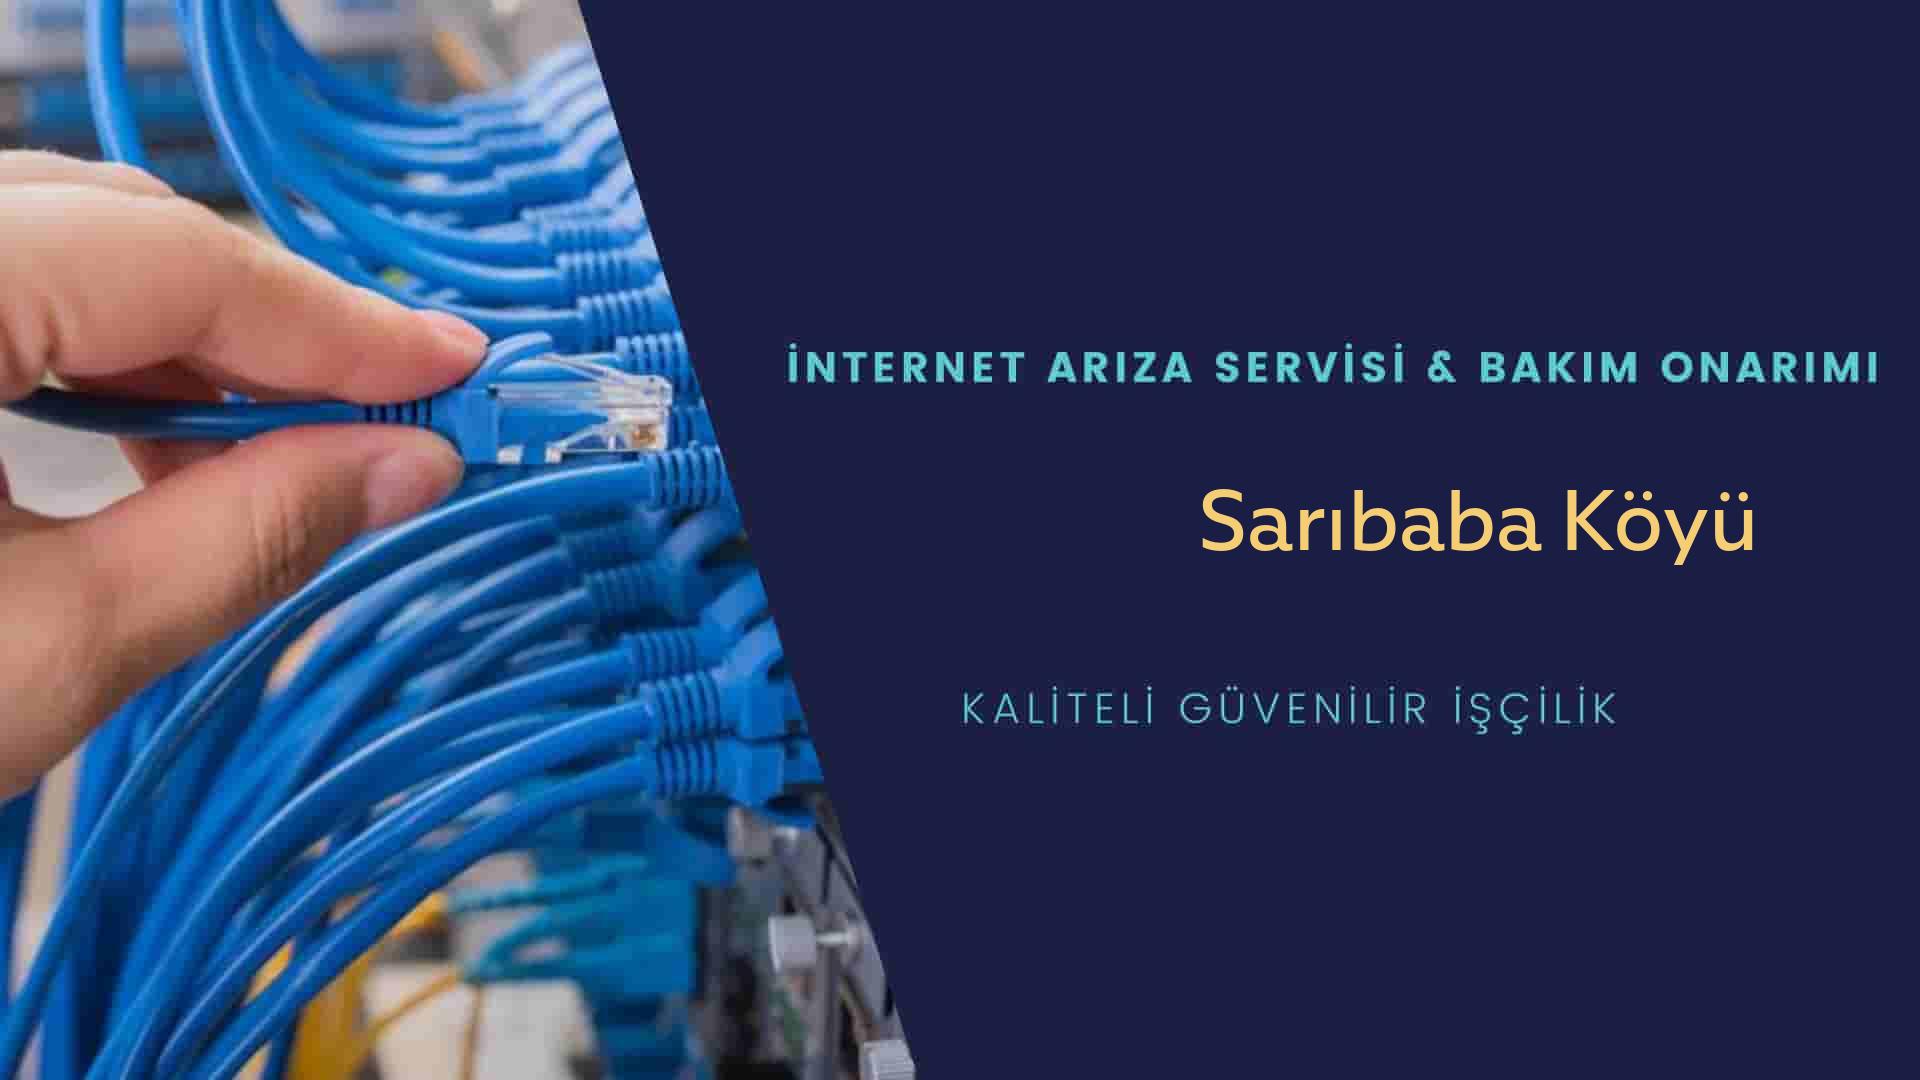 Sarıbaba Köyü internet kablosu çekimi yapan yerler veya elektrikçiler mi? arıyorsunuz doğru yerdesiniz o zaman sizlere 7/24 yardımcı olacak profesyonel ustalarımız bir telefon kadar yakındır size.